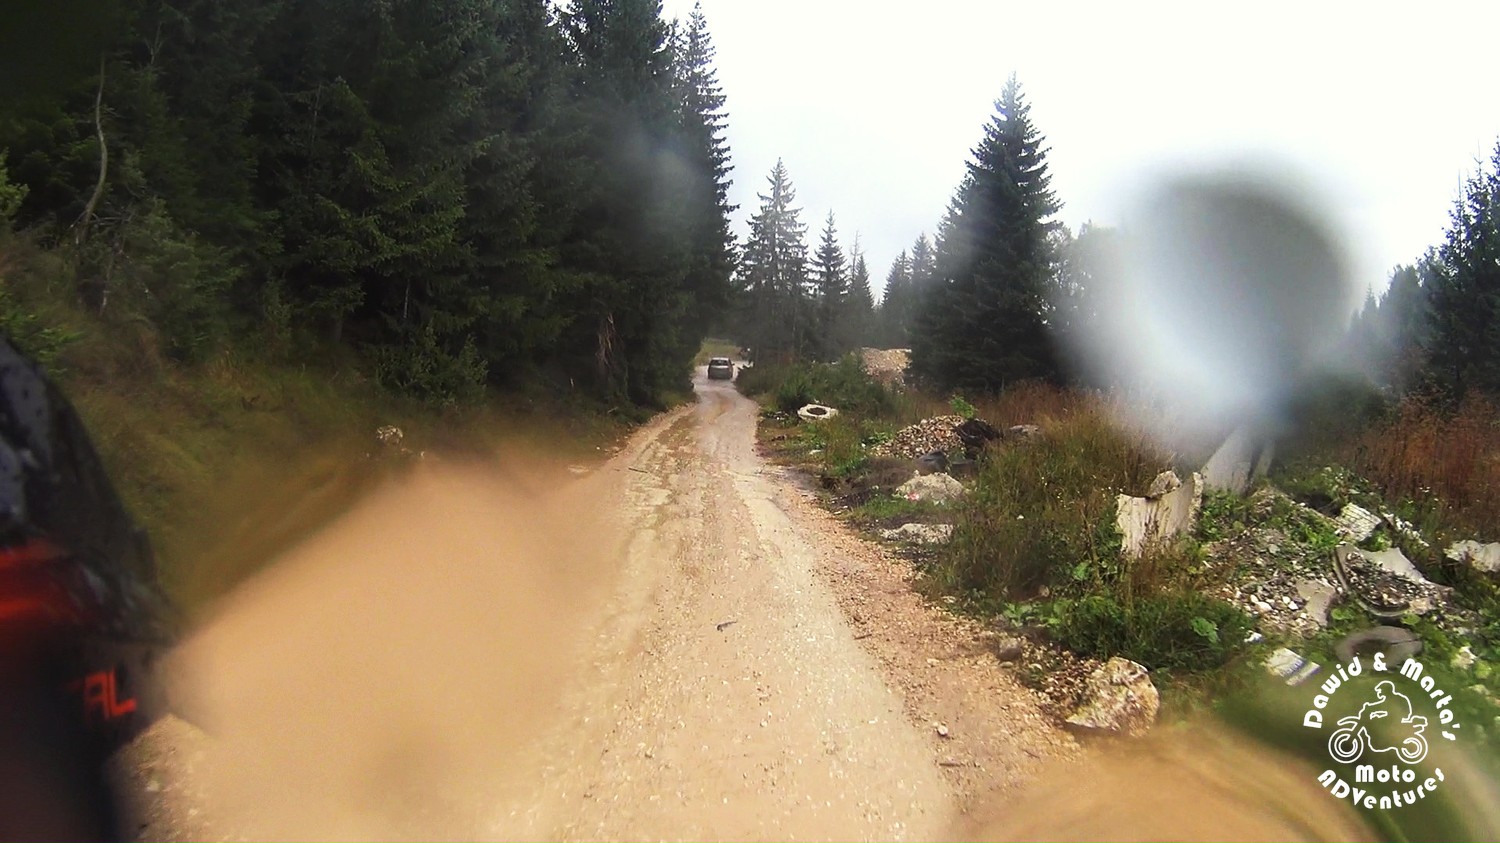 Offroad road works near Zabljak